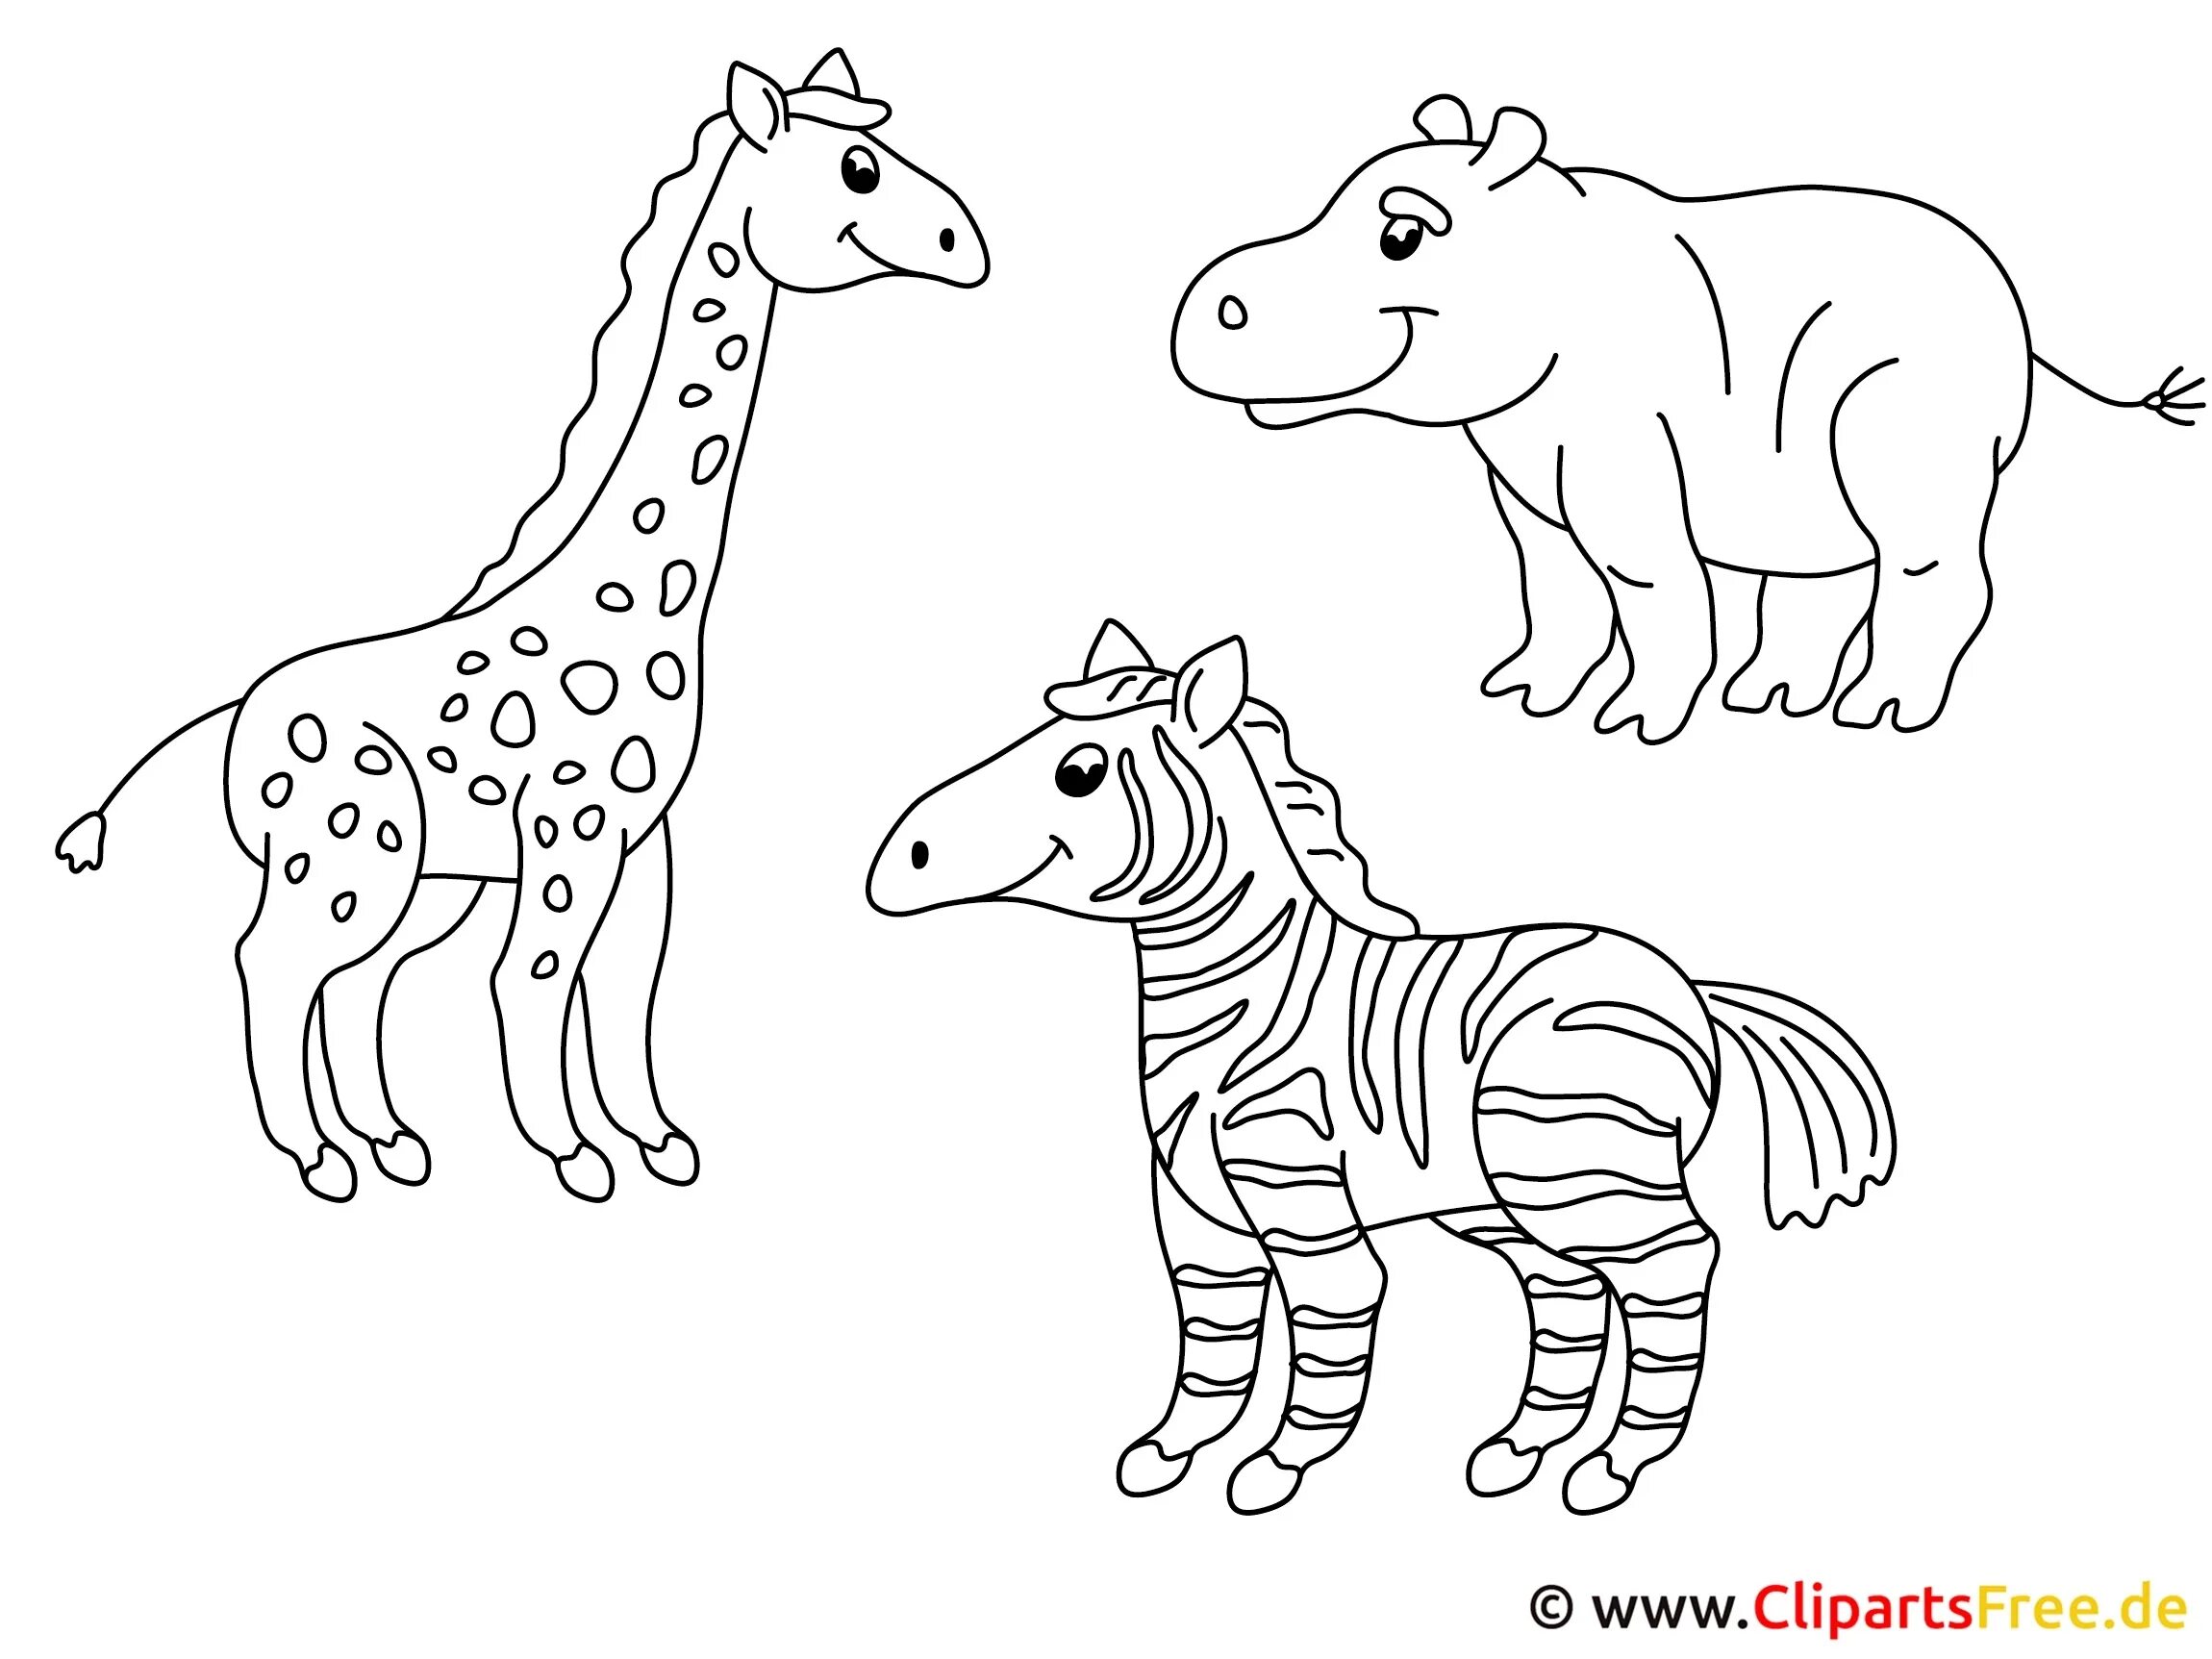 Раскраска группы животных. Зоопарк раскраска для детей. Раскраска для малышей. Зоопарк. Животные из зоопарка раскраски для детей. Зоопарк рисунок для детей раскраска.